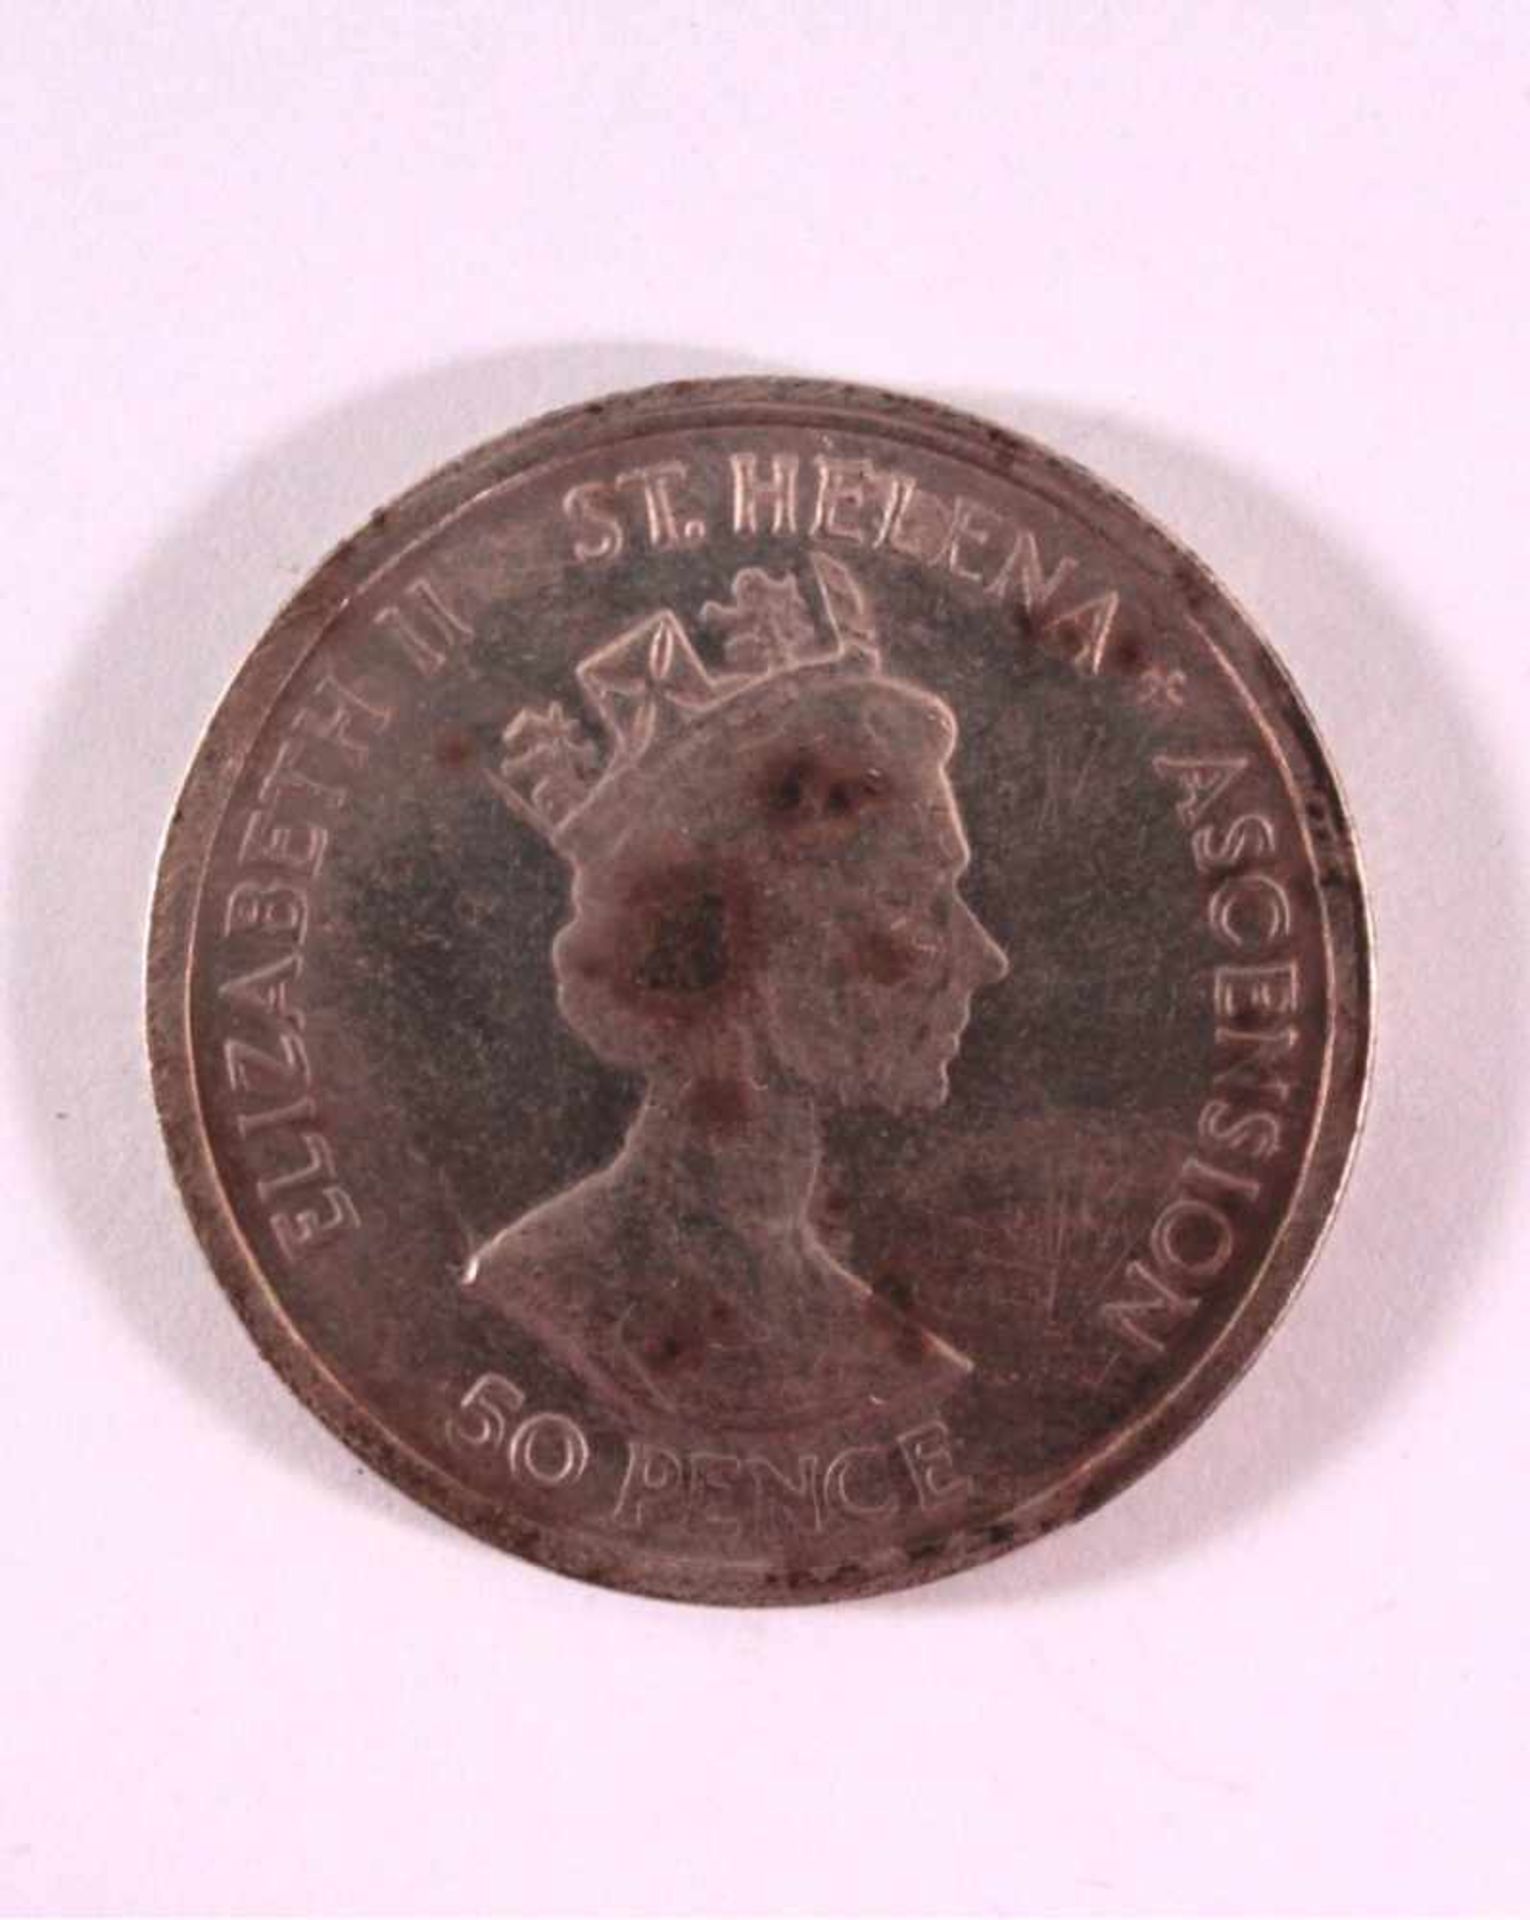 50 Pence 1906, Royal WeddingElizabeth II St. Helena Ascension, July 23rd 1906, vz., D-3,8 cm - Bild 2 aus 2